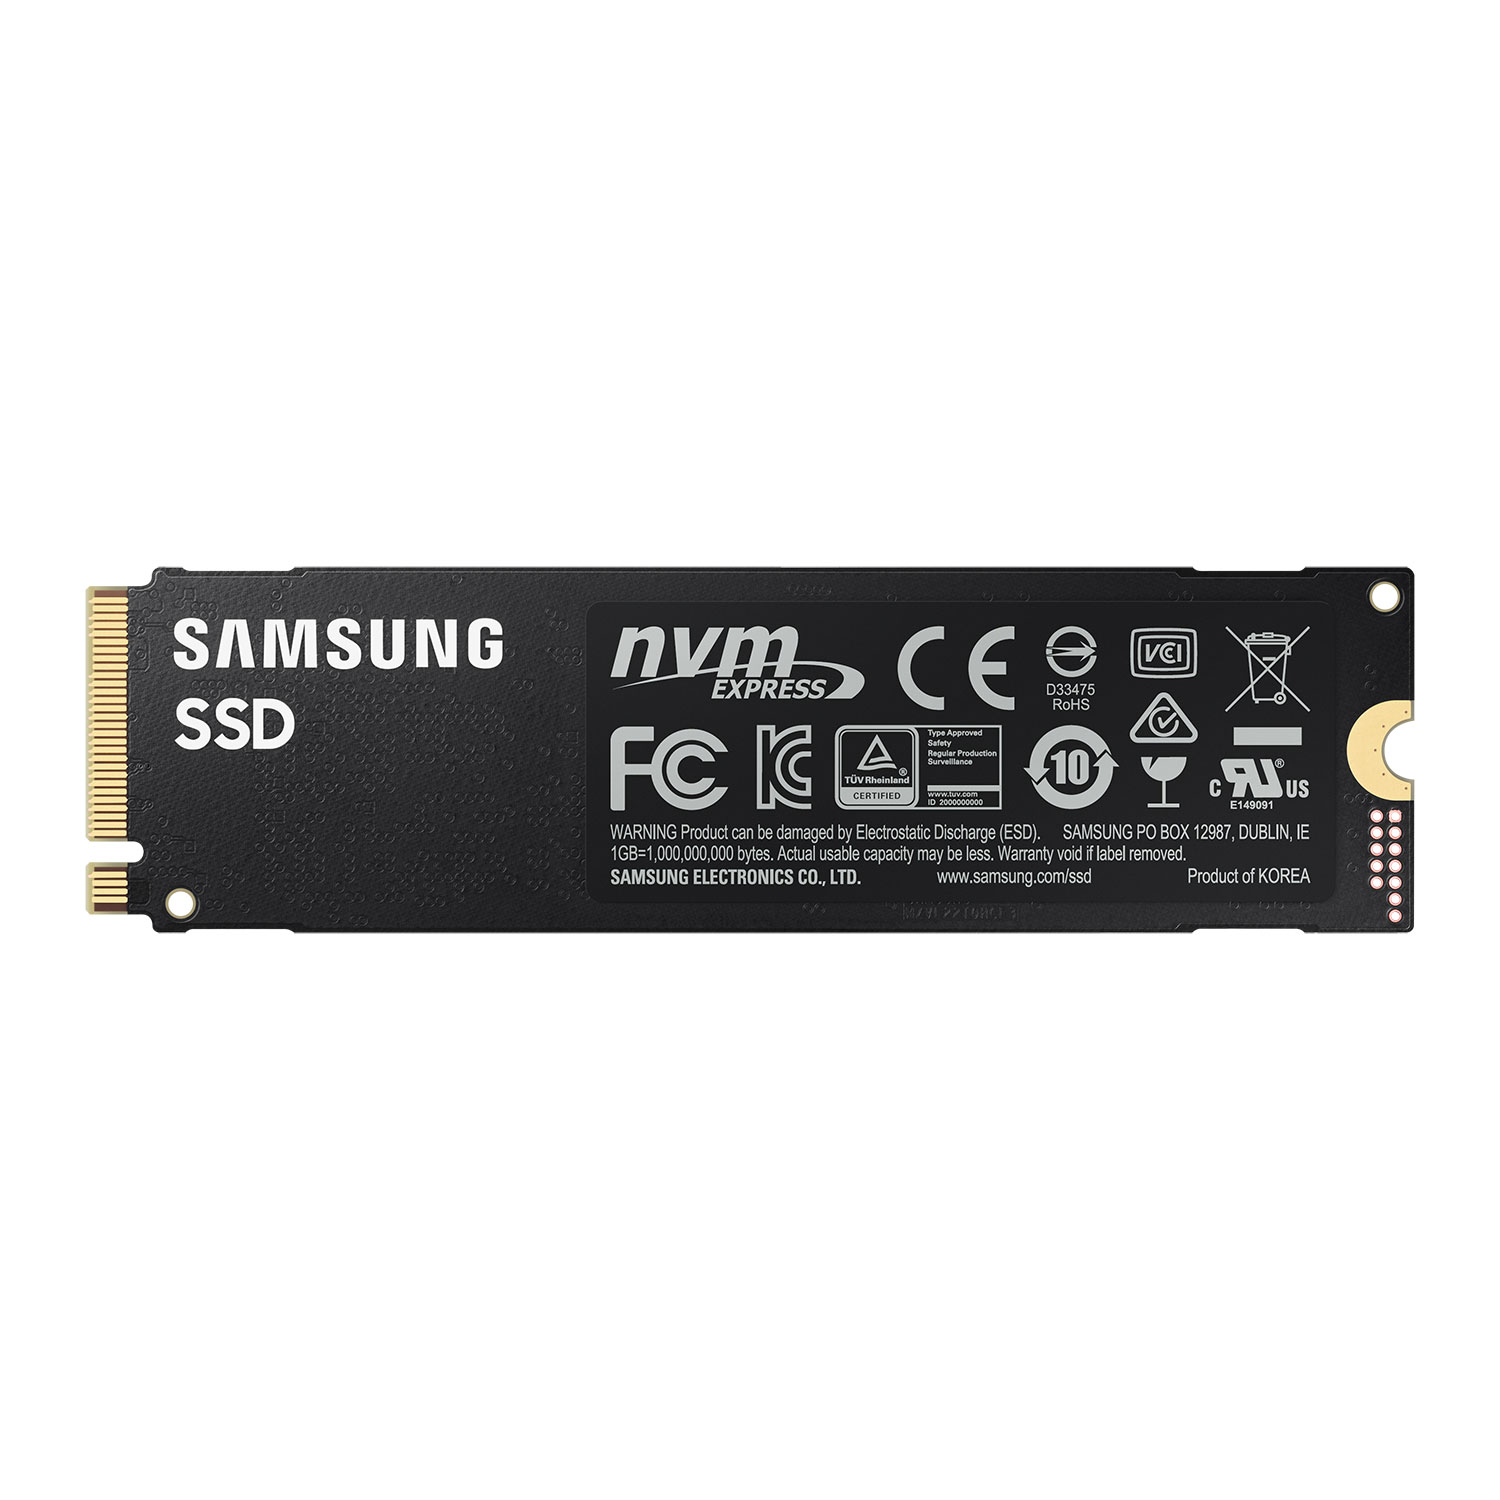 Immagine pubblicata in relazione al seguente contenuto: Il drive SSD monster Samsung 980 Pro M.2 PCIe Gen 4 2TB su uno store on line? | Nome immagine: news31409_Samsung-980-Pro-M.2-PCIe-Gen-4_3.jpg